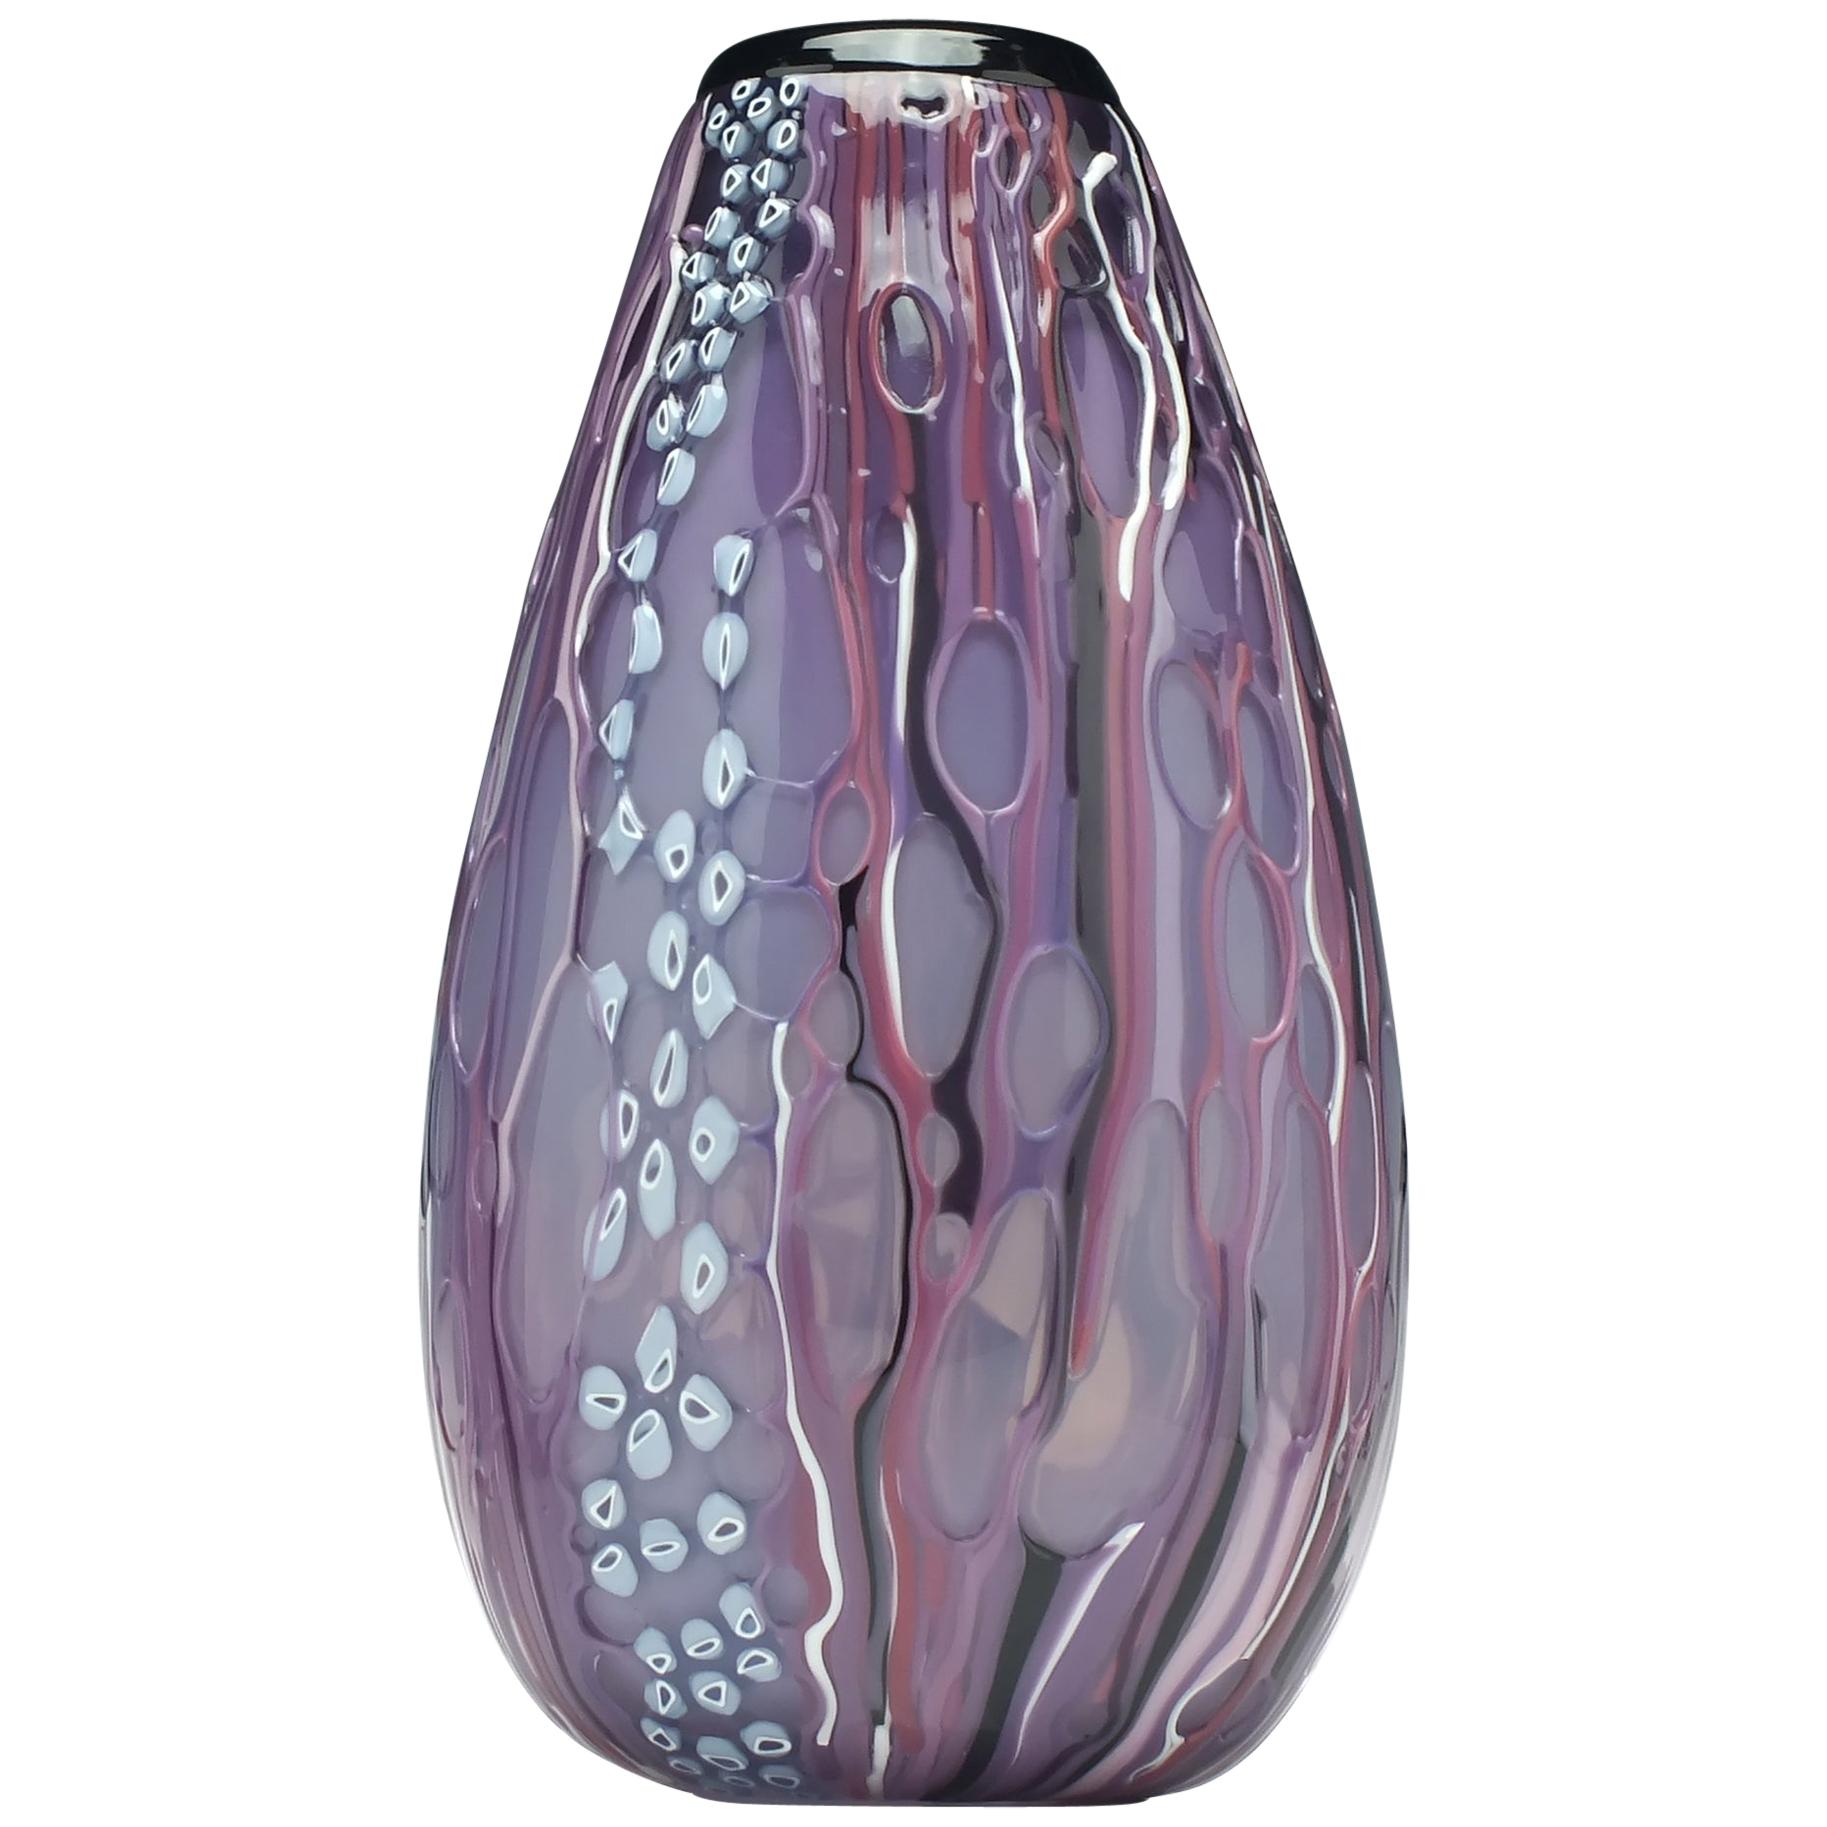 Unique Original Amethyst Mike Hunter 'Melted' Vase For Sale